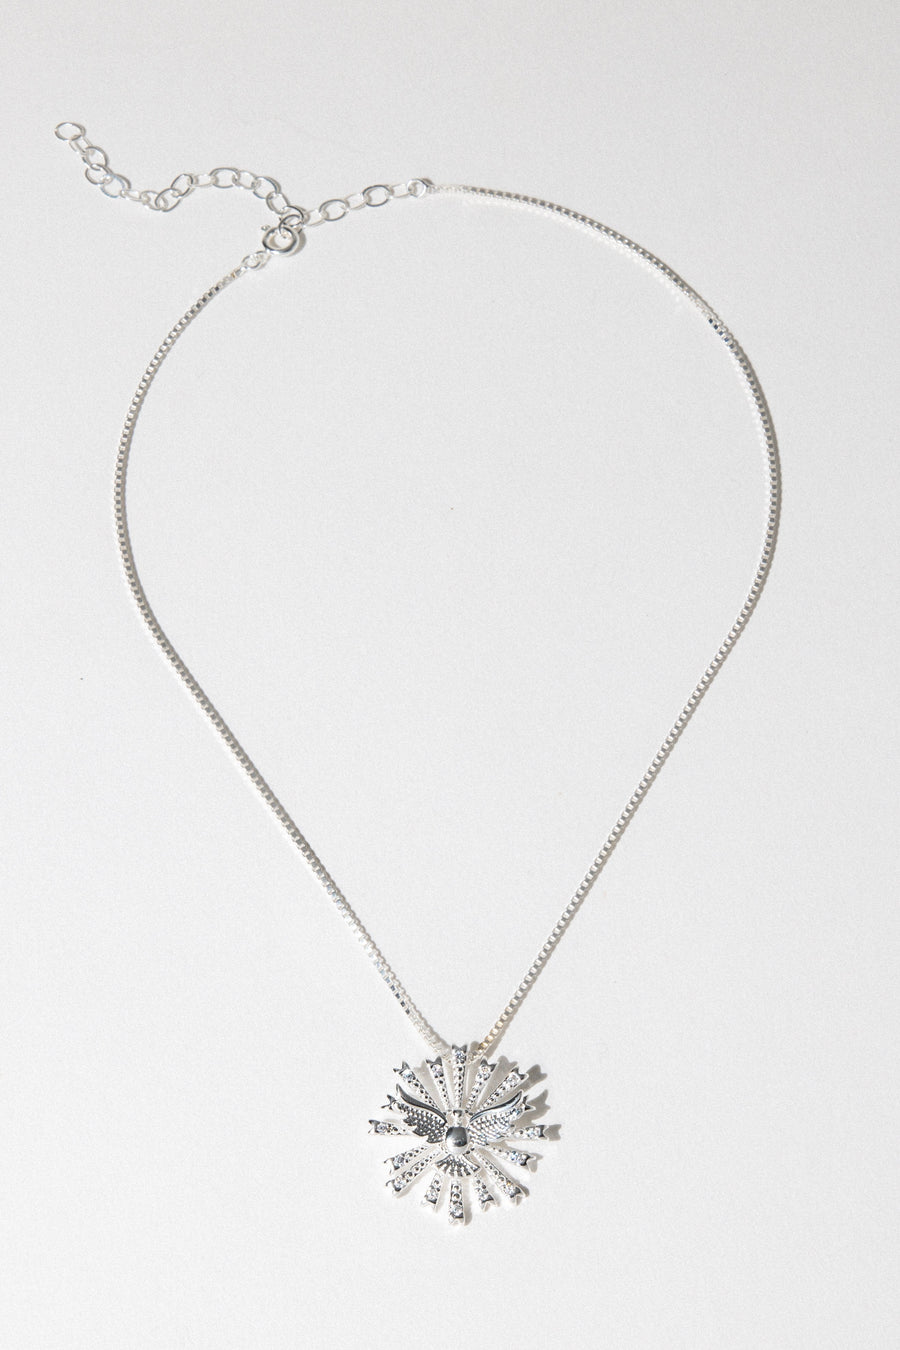 Dona Italia Jewelry 14 Inches / Silver Dove Rays Necklace